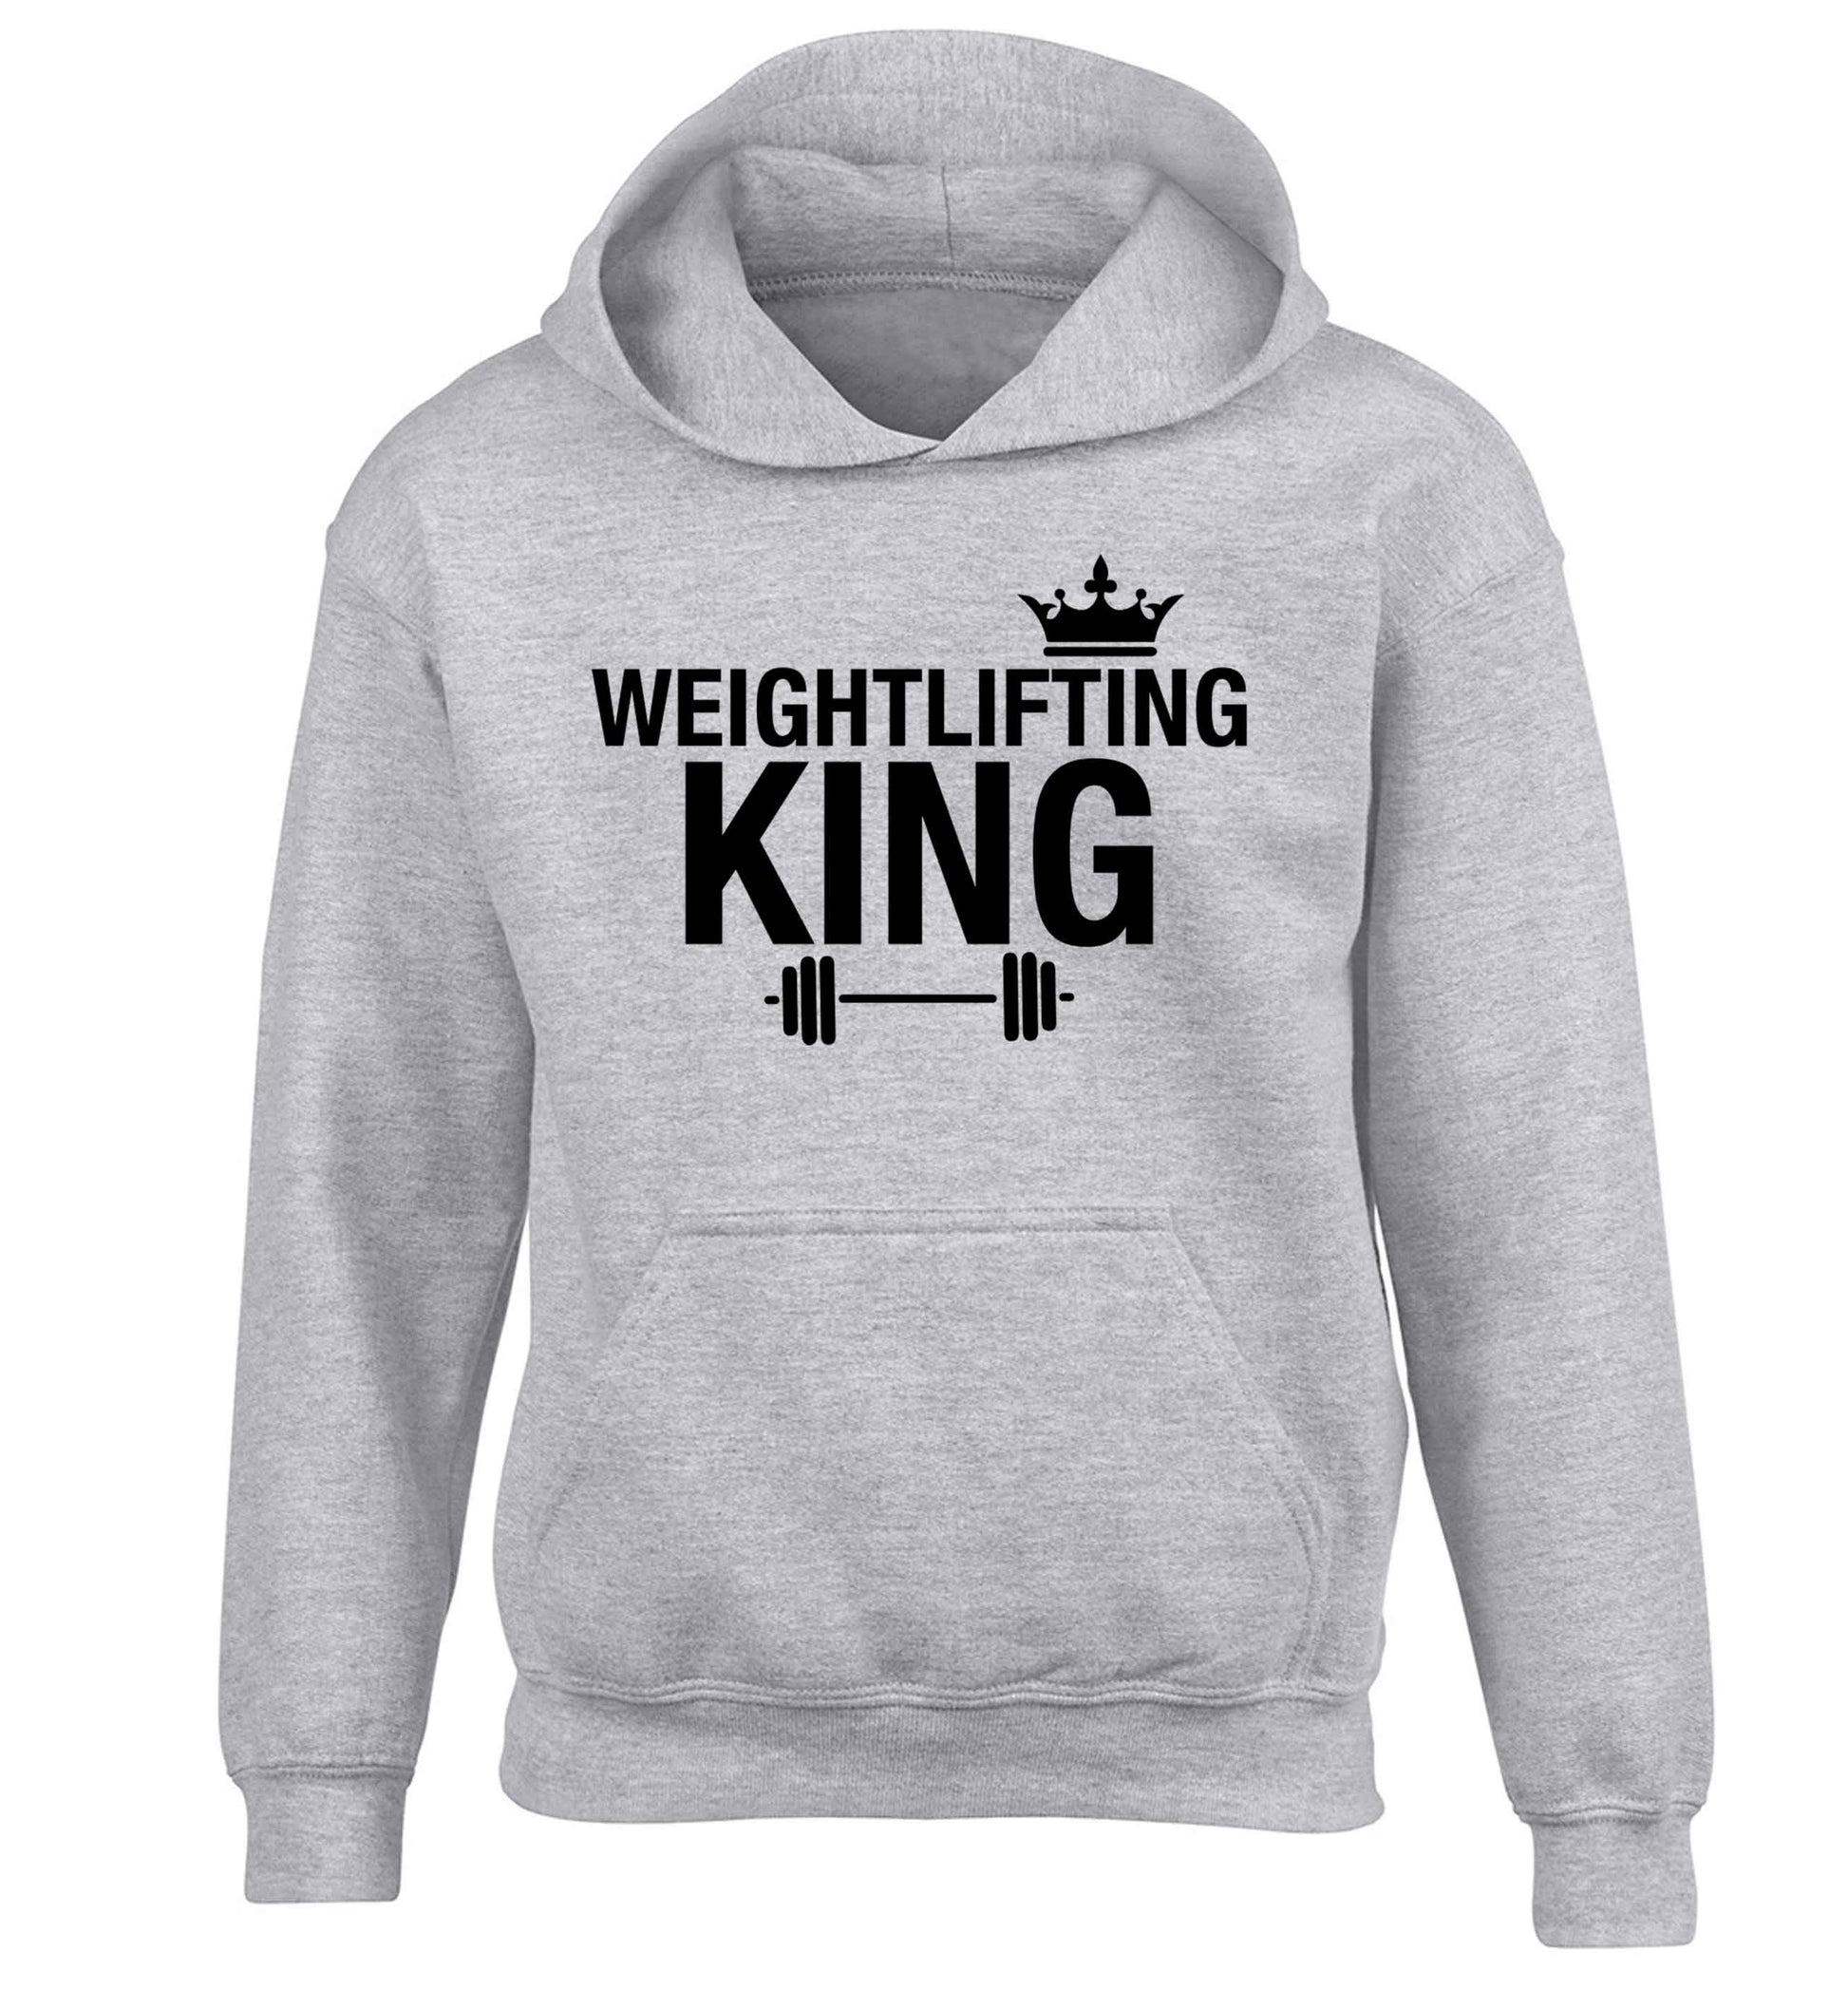 Weightlifting king children's grey hoodie 12-13 Years